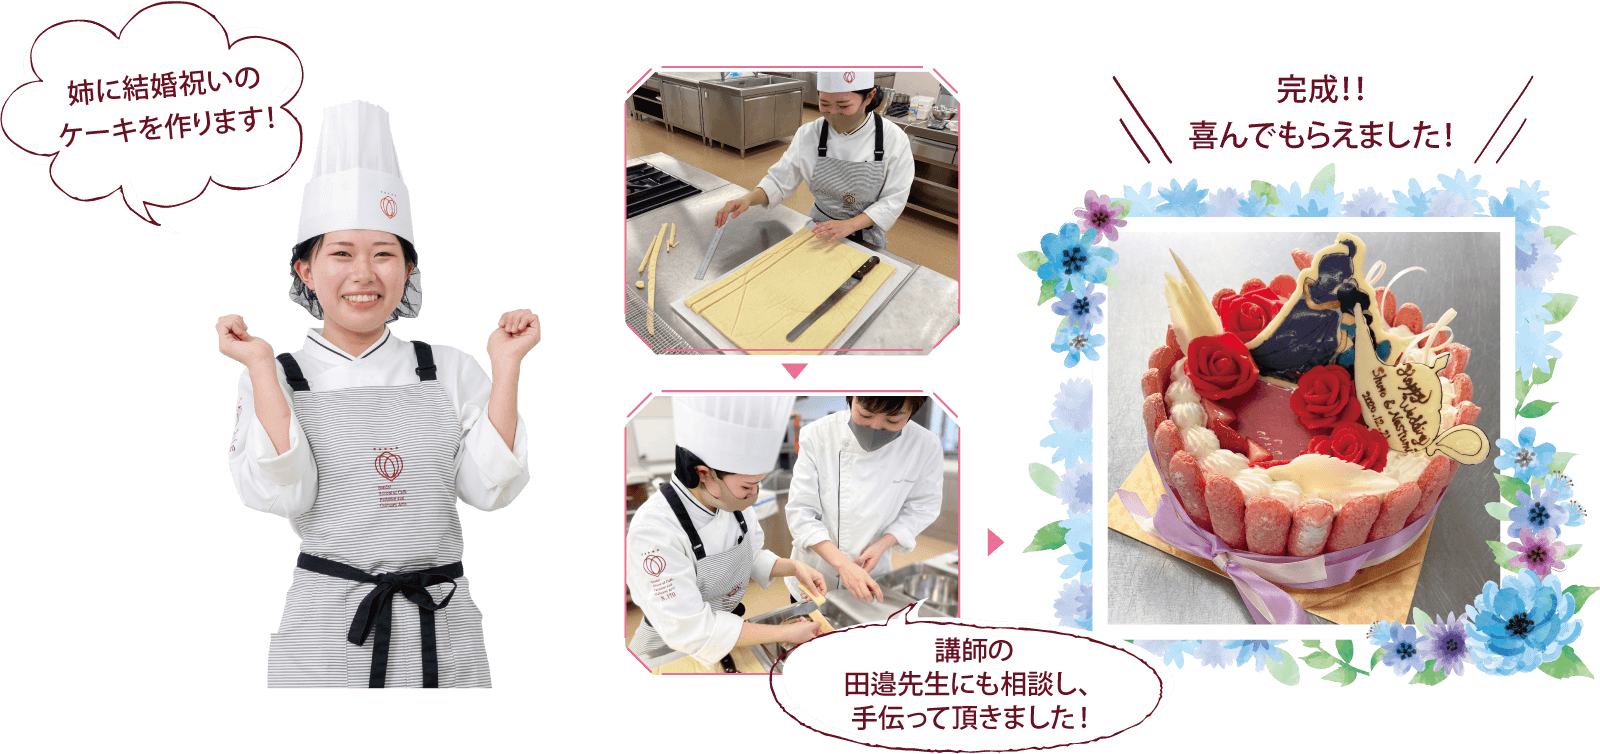 姉に結婚祝いのケーキを作ります！講師の田邉先生にも相談し、手伝って頂きました！